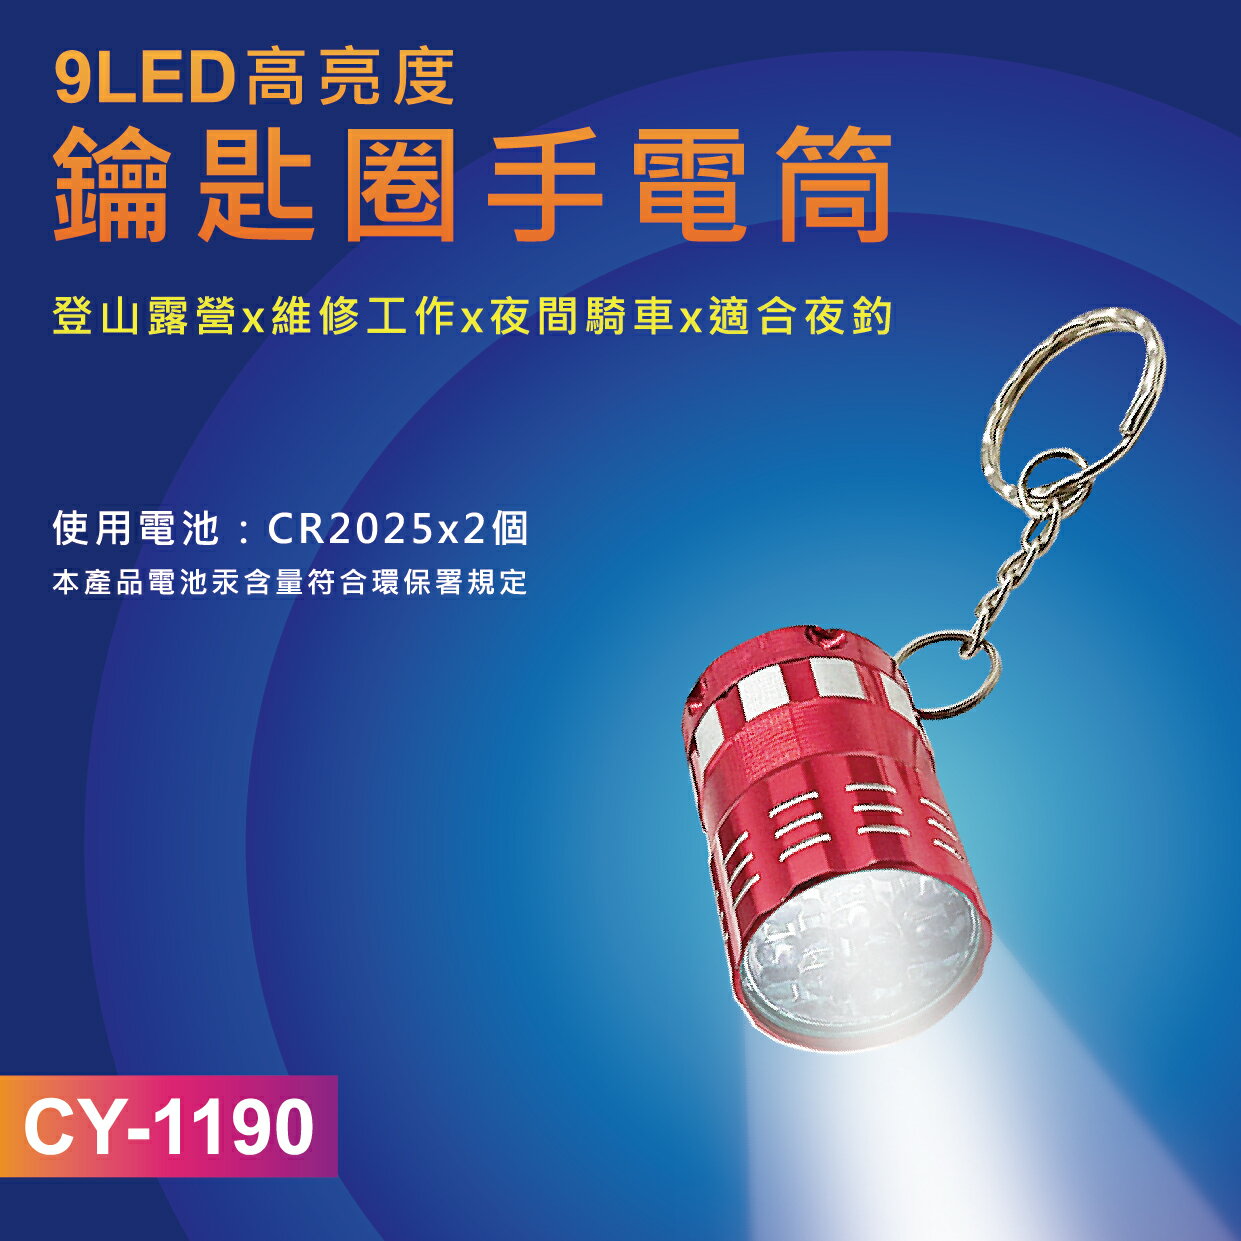 【熊讚】CY-1190 9LED高亮度 手電筒 鑰匙圈(附贈CR2025鋰電池2顆)